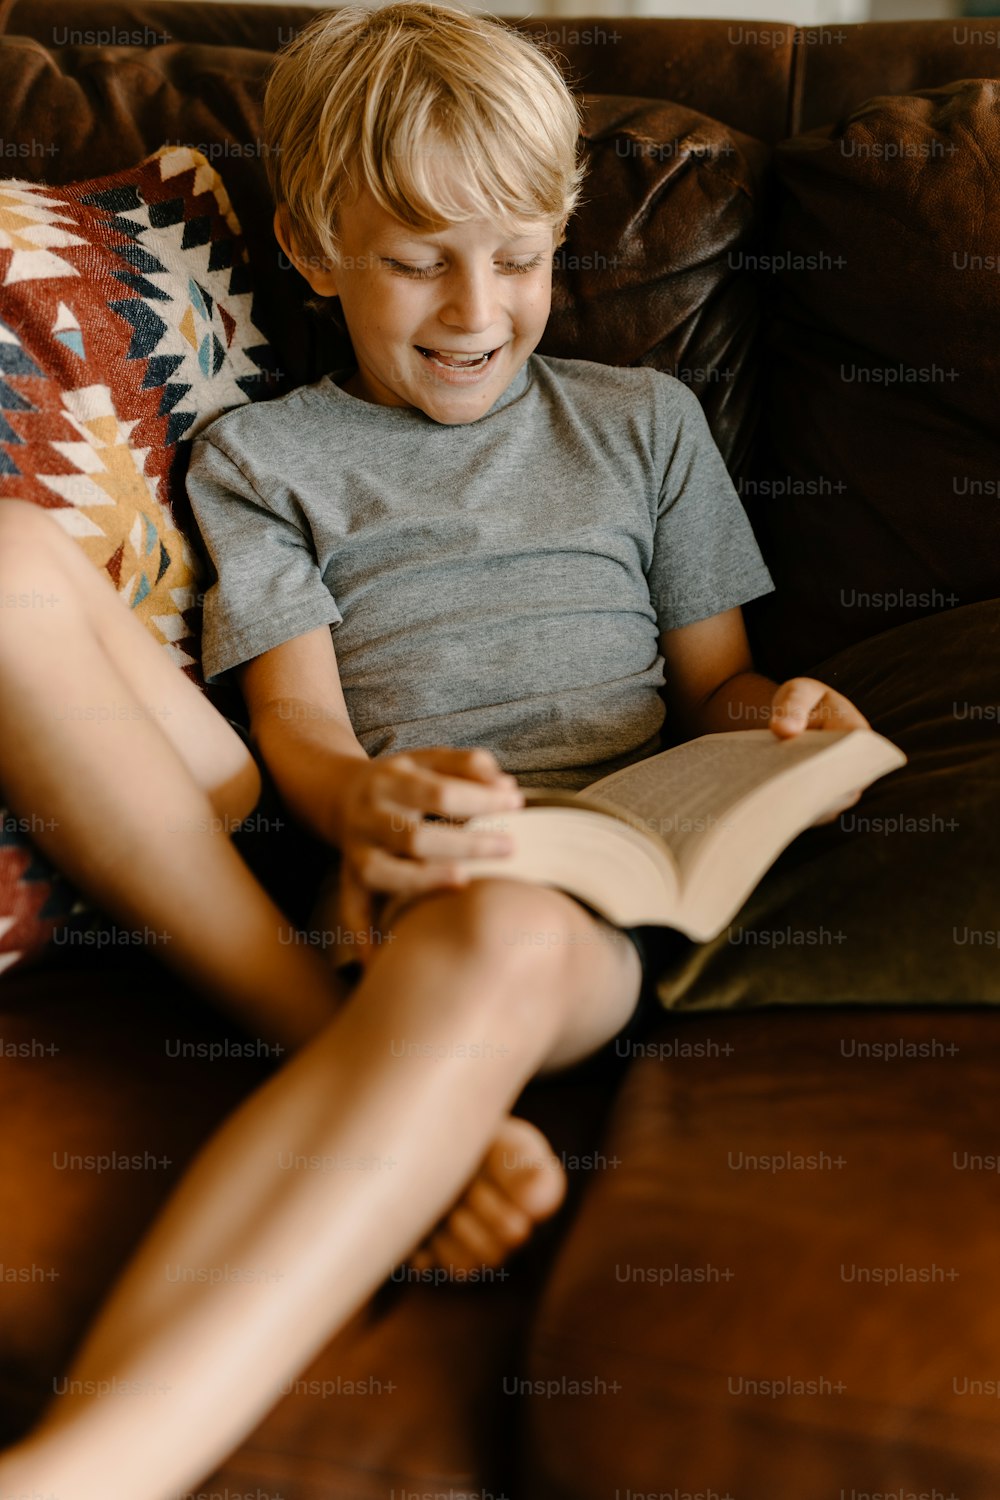 Un giovane ragazzo seduto su un divano che legge un libro